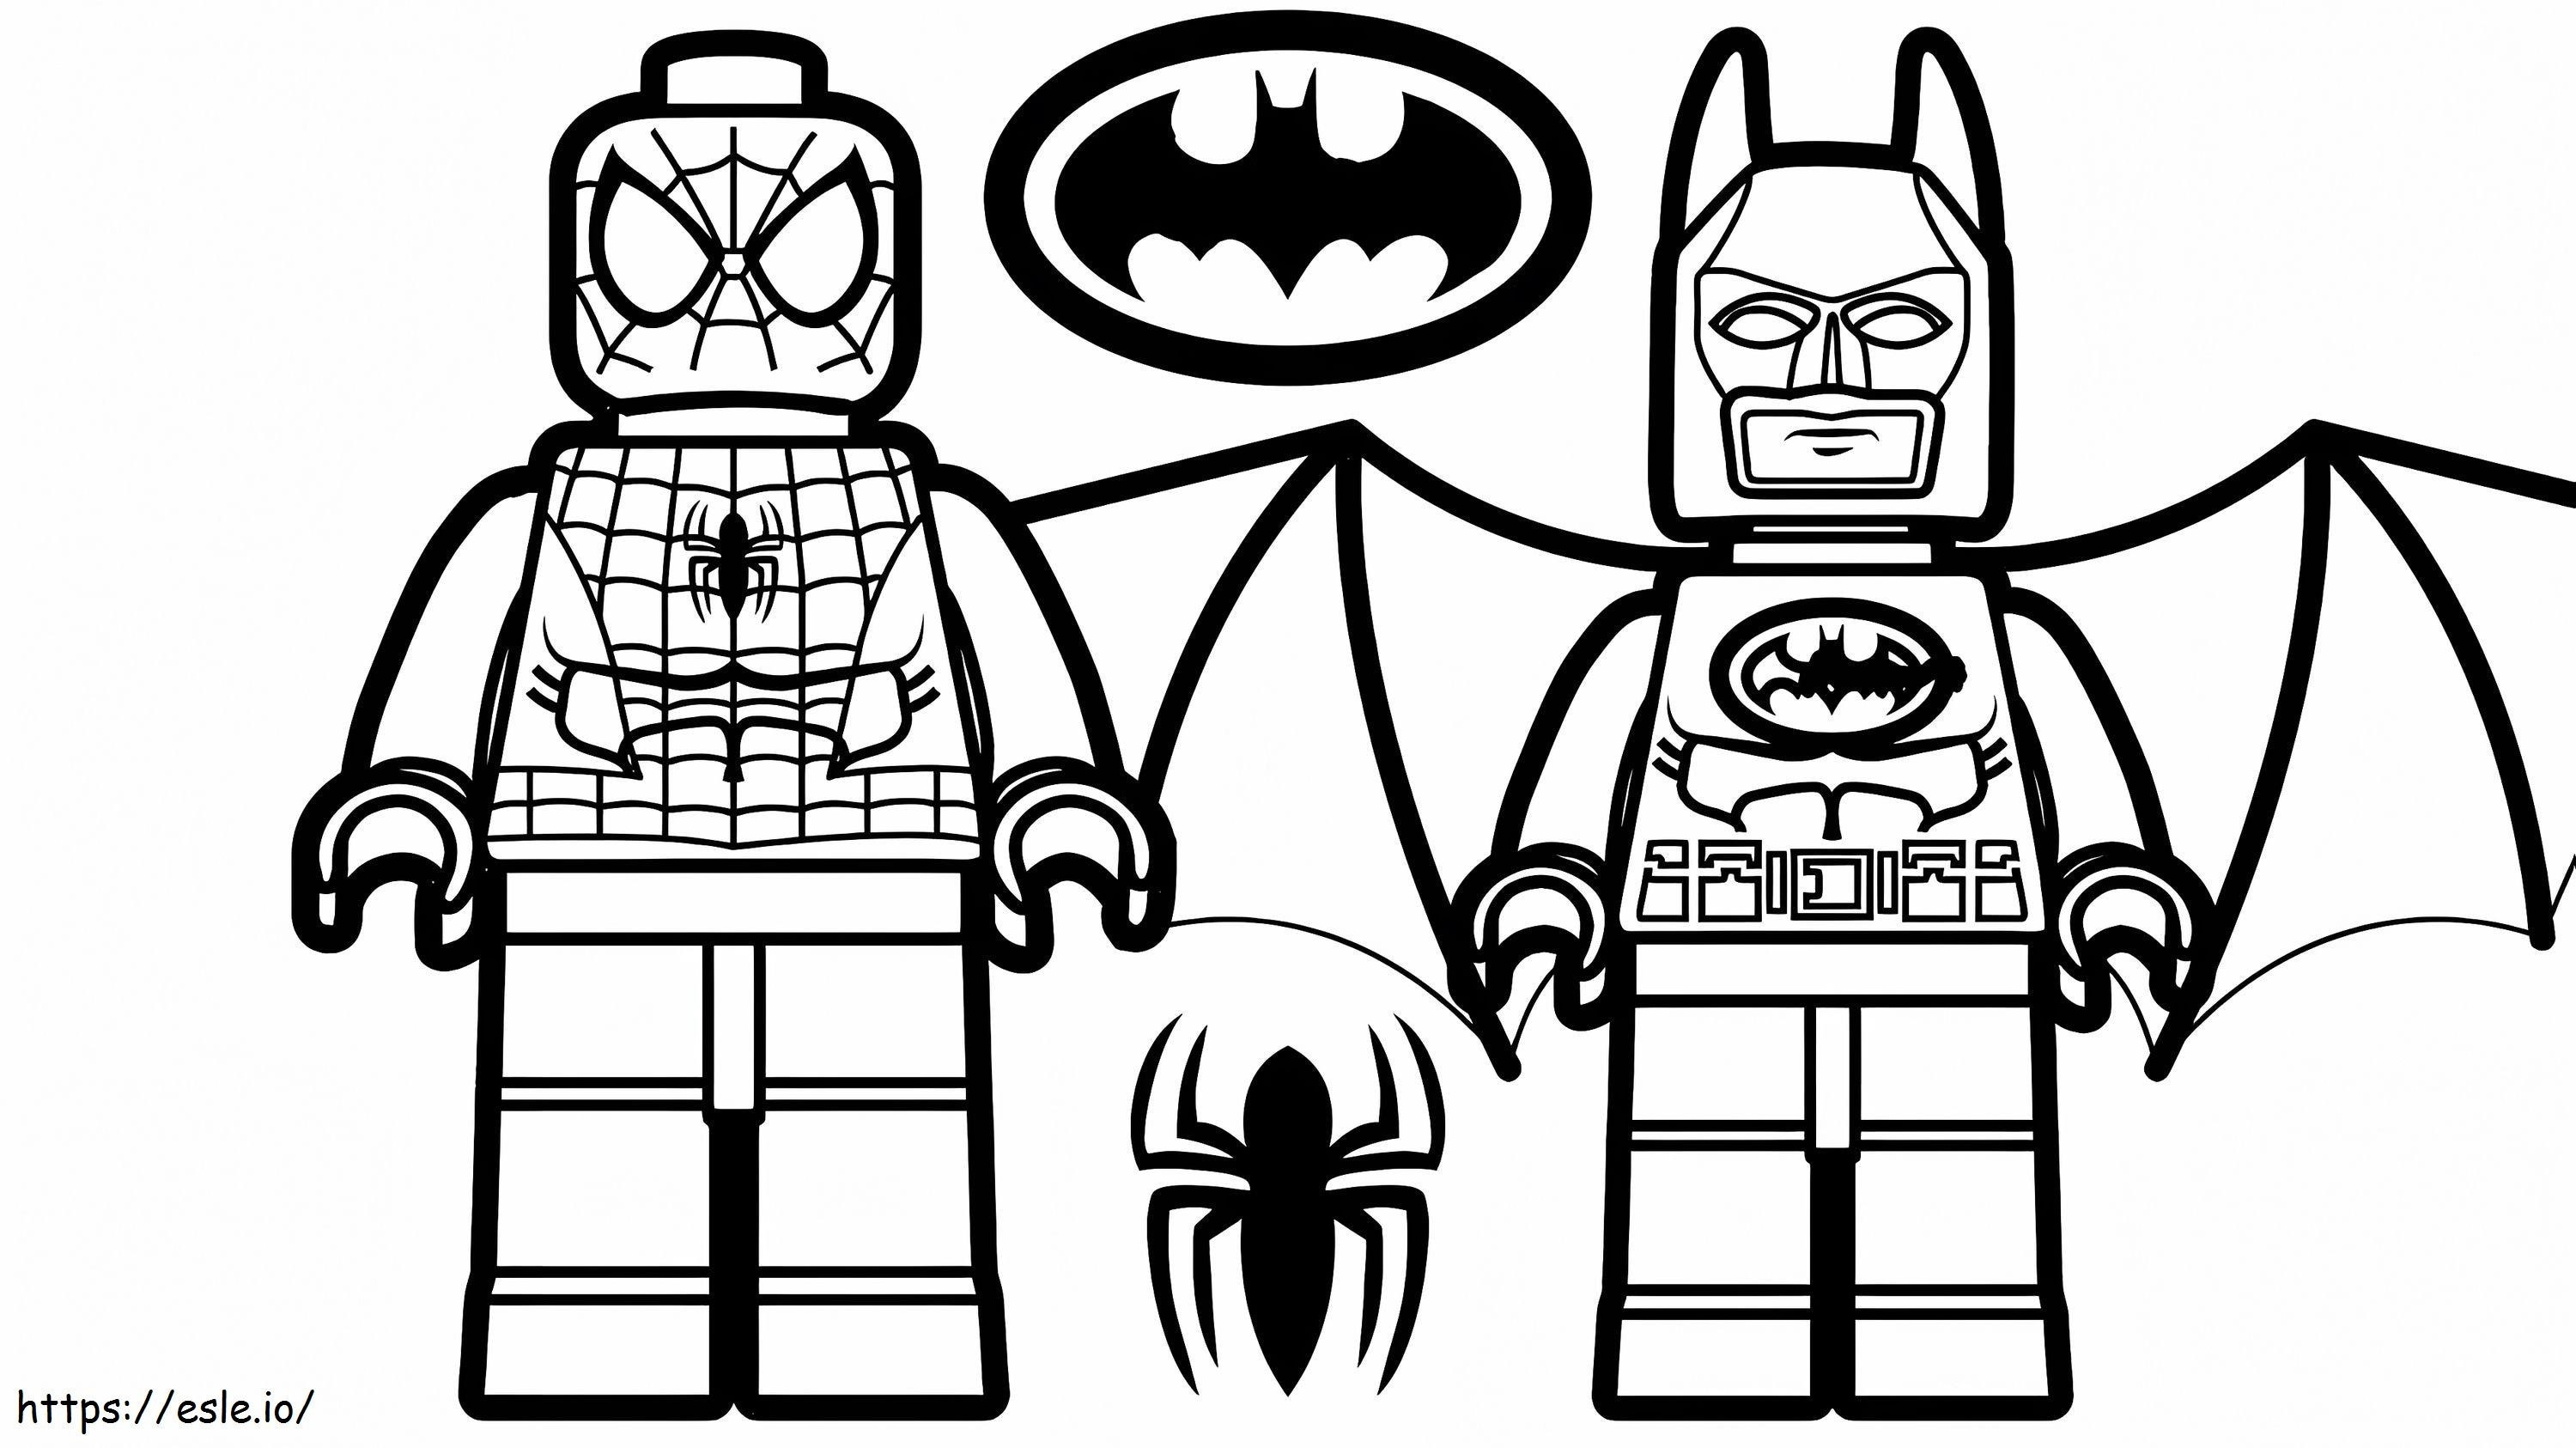 1532141570 Lego Spiderman și Lego Batman A4 E1600348956736 de colorat